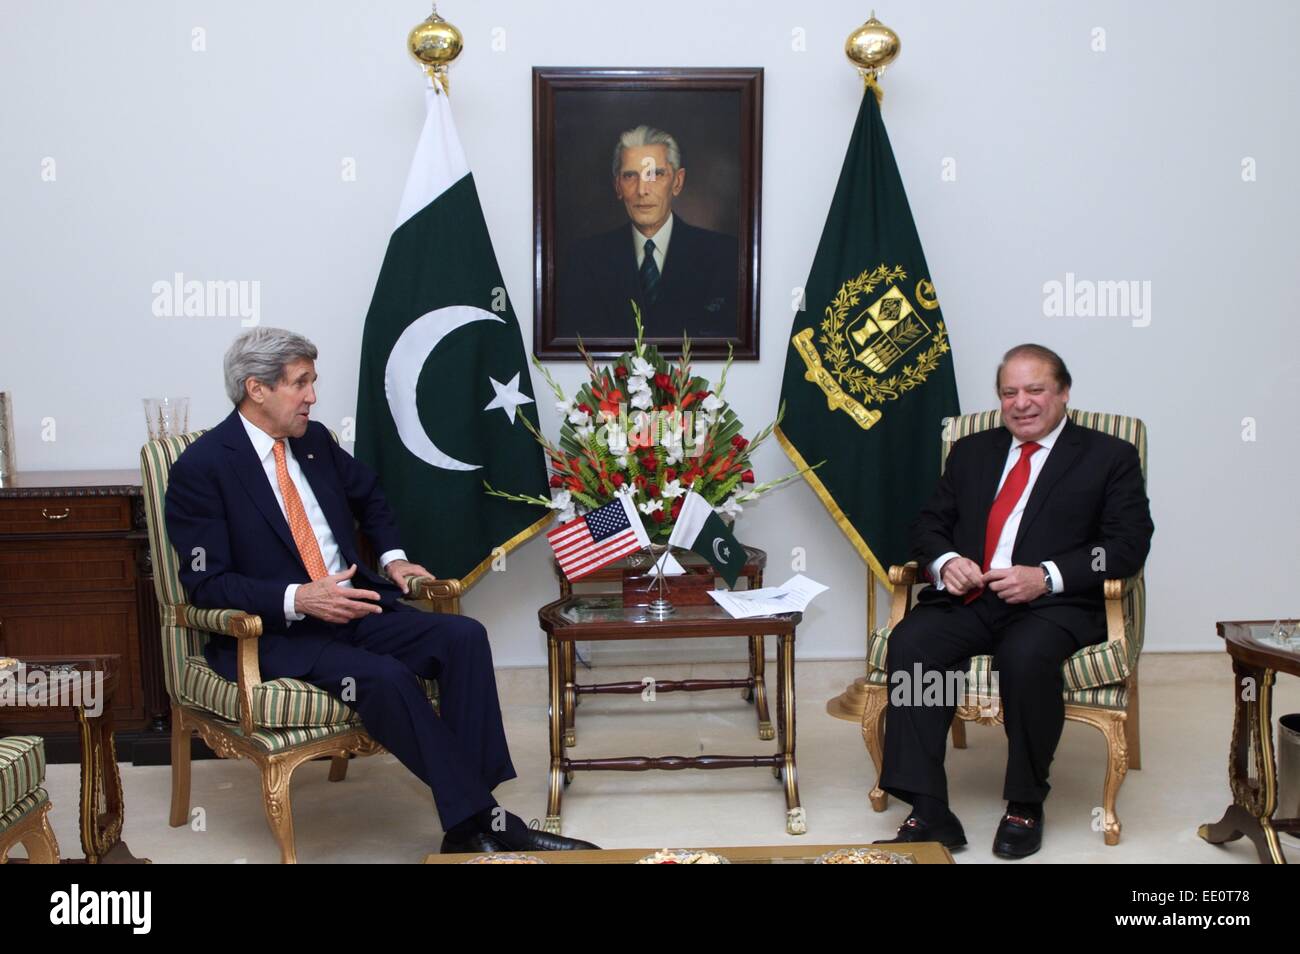 La Secretaria de Estado de Estados Unidos, John Kerry se encuentra con el Primer Ministro paquistaní, Nawaz Sharif, antes de una reunión bilateral celebrada el 12 de enero de 2014 en Islamabad, Pakistán. Foto de stock